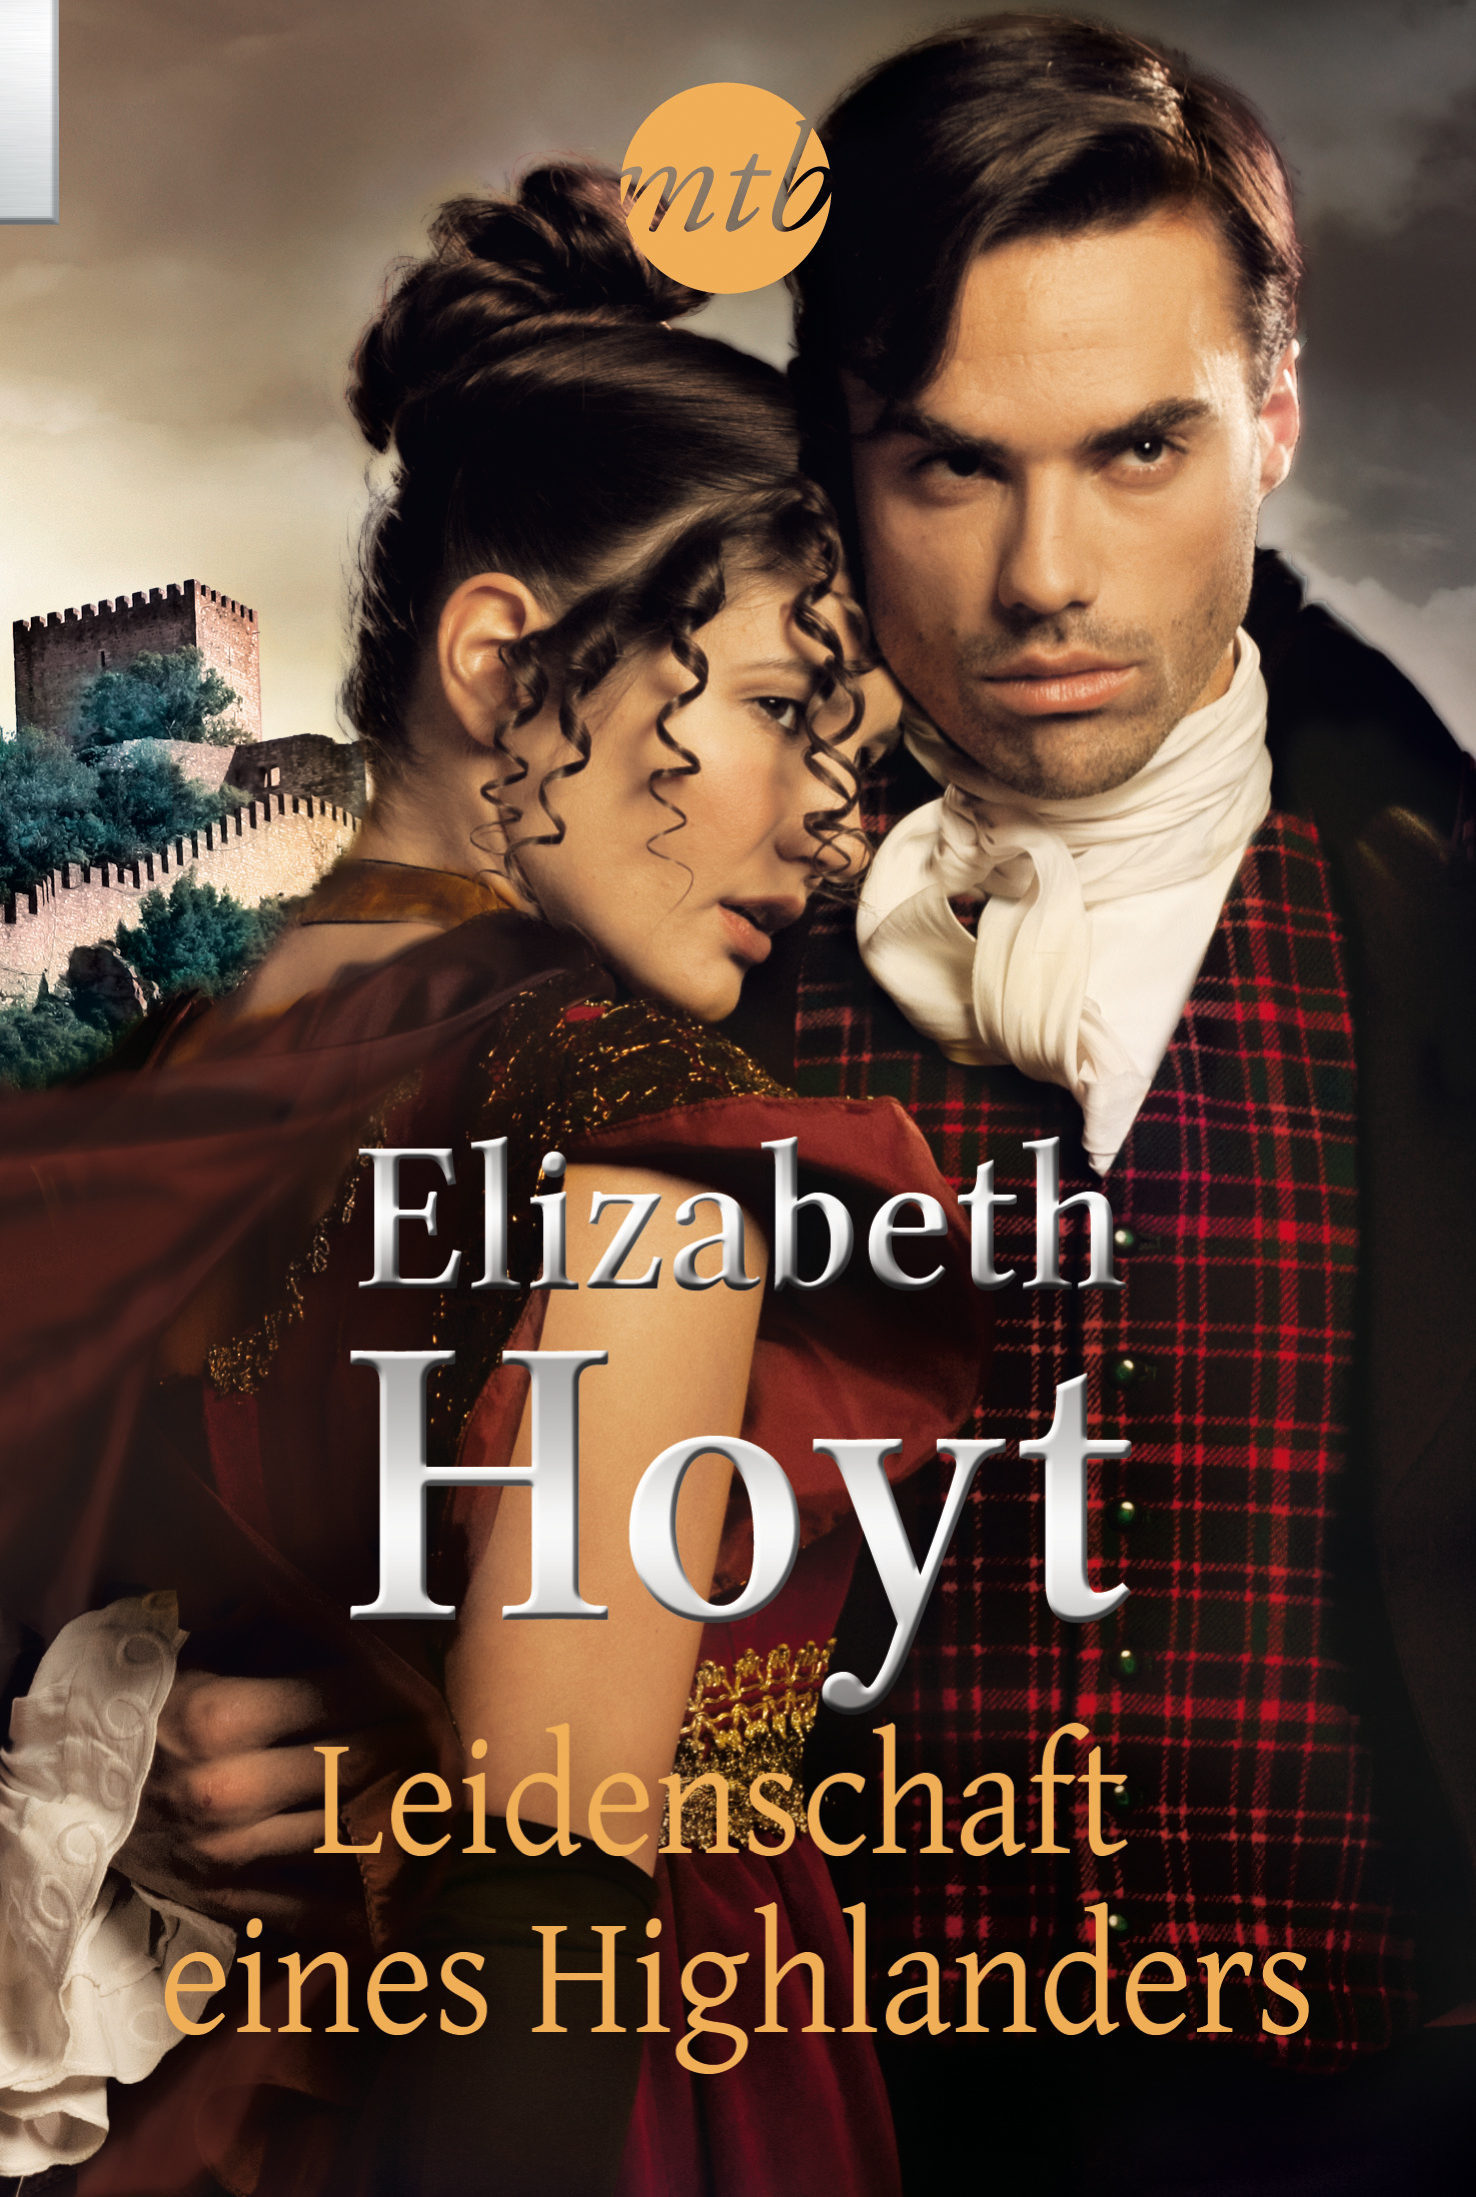 Leidenschaft eines Highlanders Elizabeth Hoyt - Bild 1 von 1